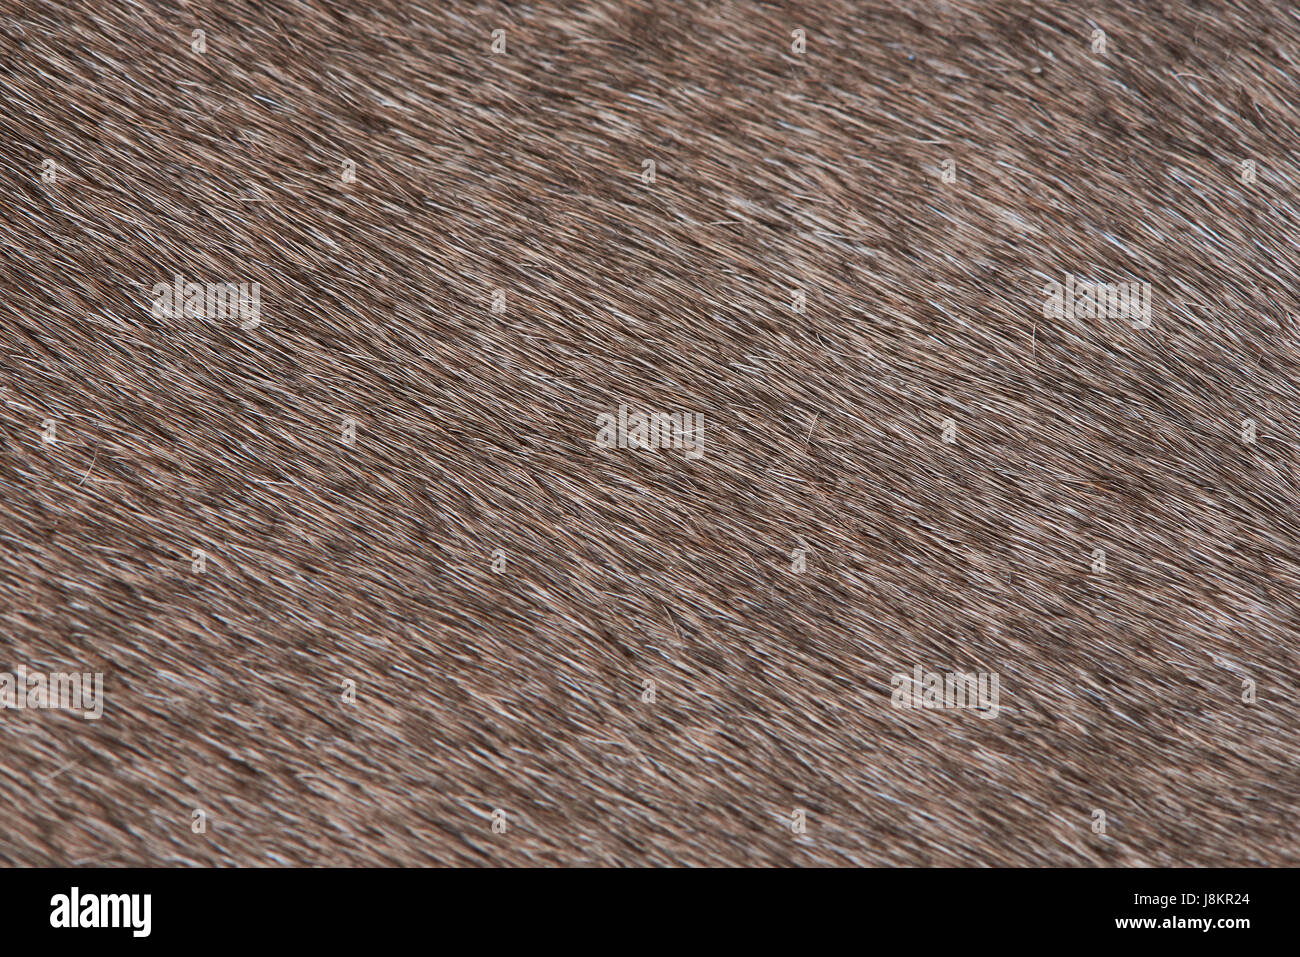 Animale domestico pelliccia marrone close-up del modello. Texture di peli di animali Foto Stock